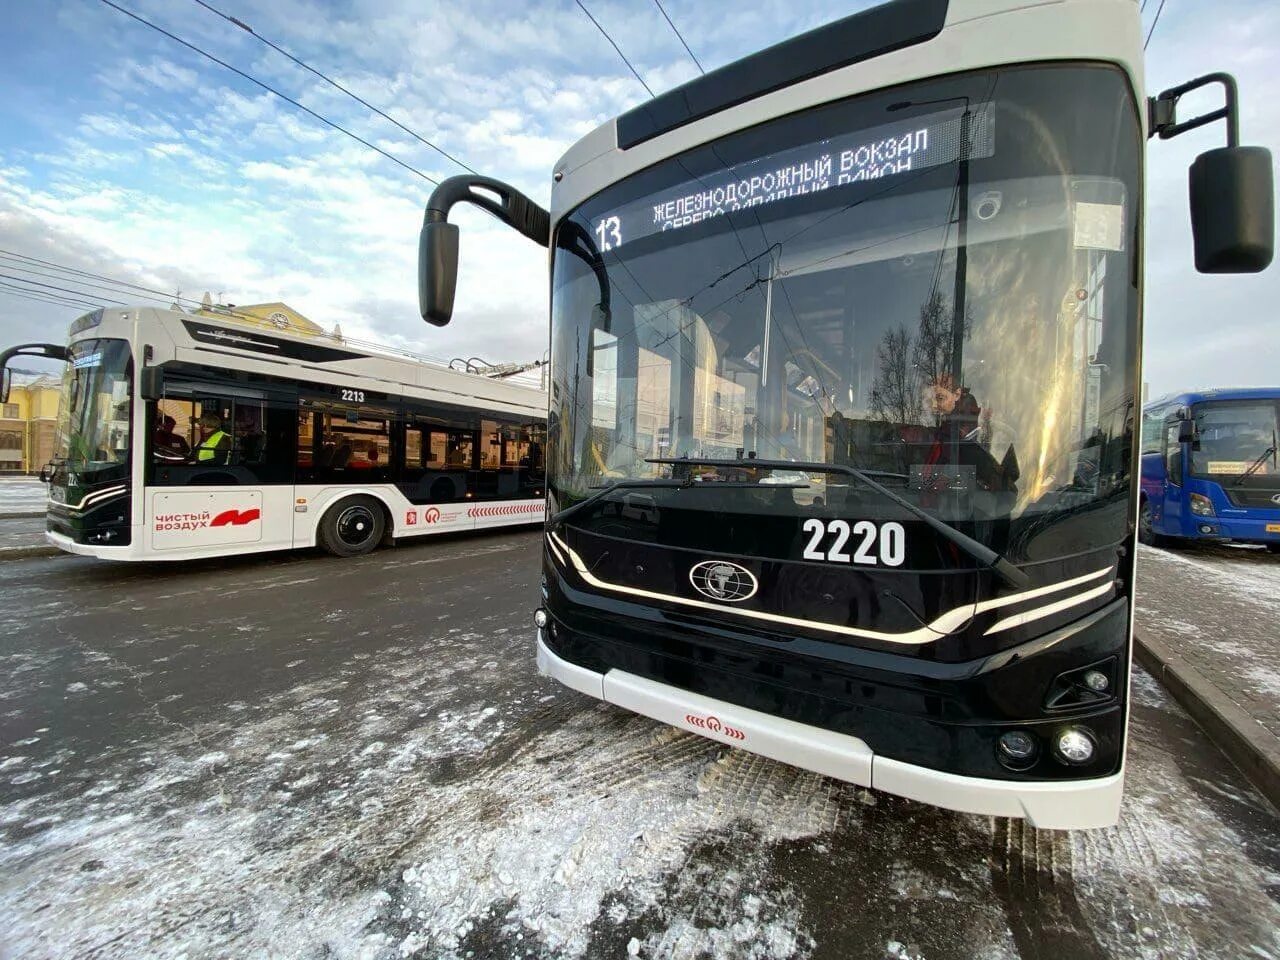 Электробус вышел на маршрут. Троллейбус Адмирал Красноярск. Адмирал низкопольный троллейбус 6281. «Адмирал» низкопольный троллейбус 6281с увеличенным автономным ходом. Новый троллейбус Адмирал Красноярск.